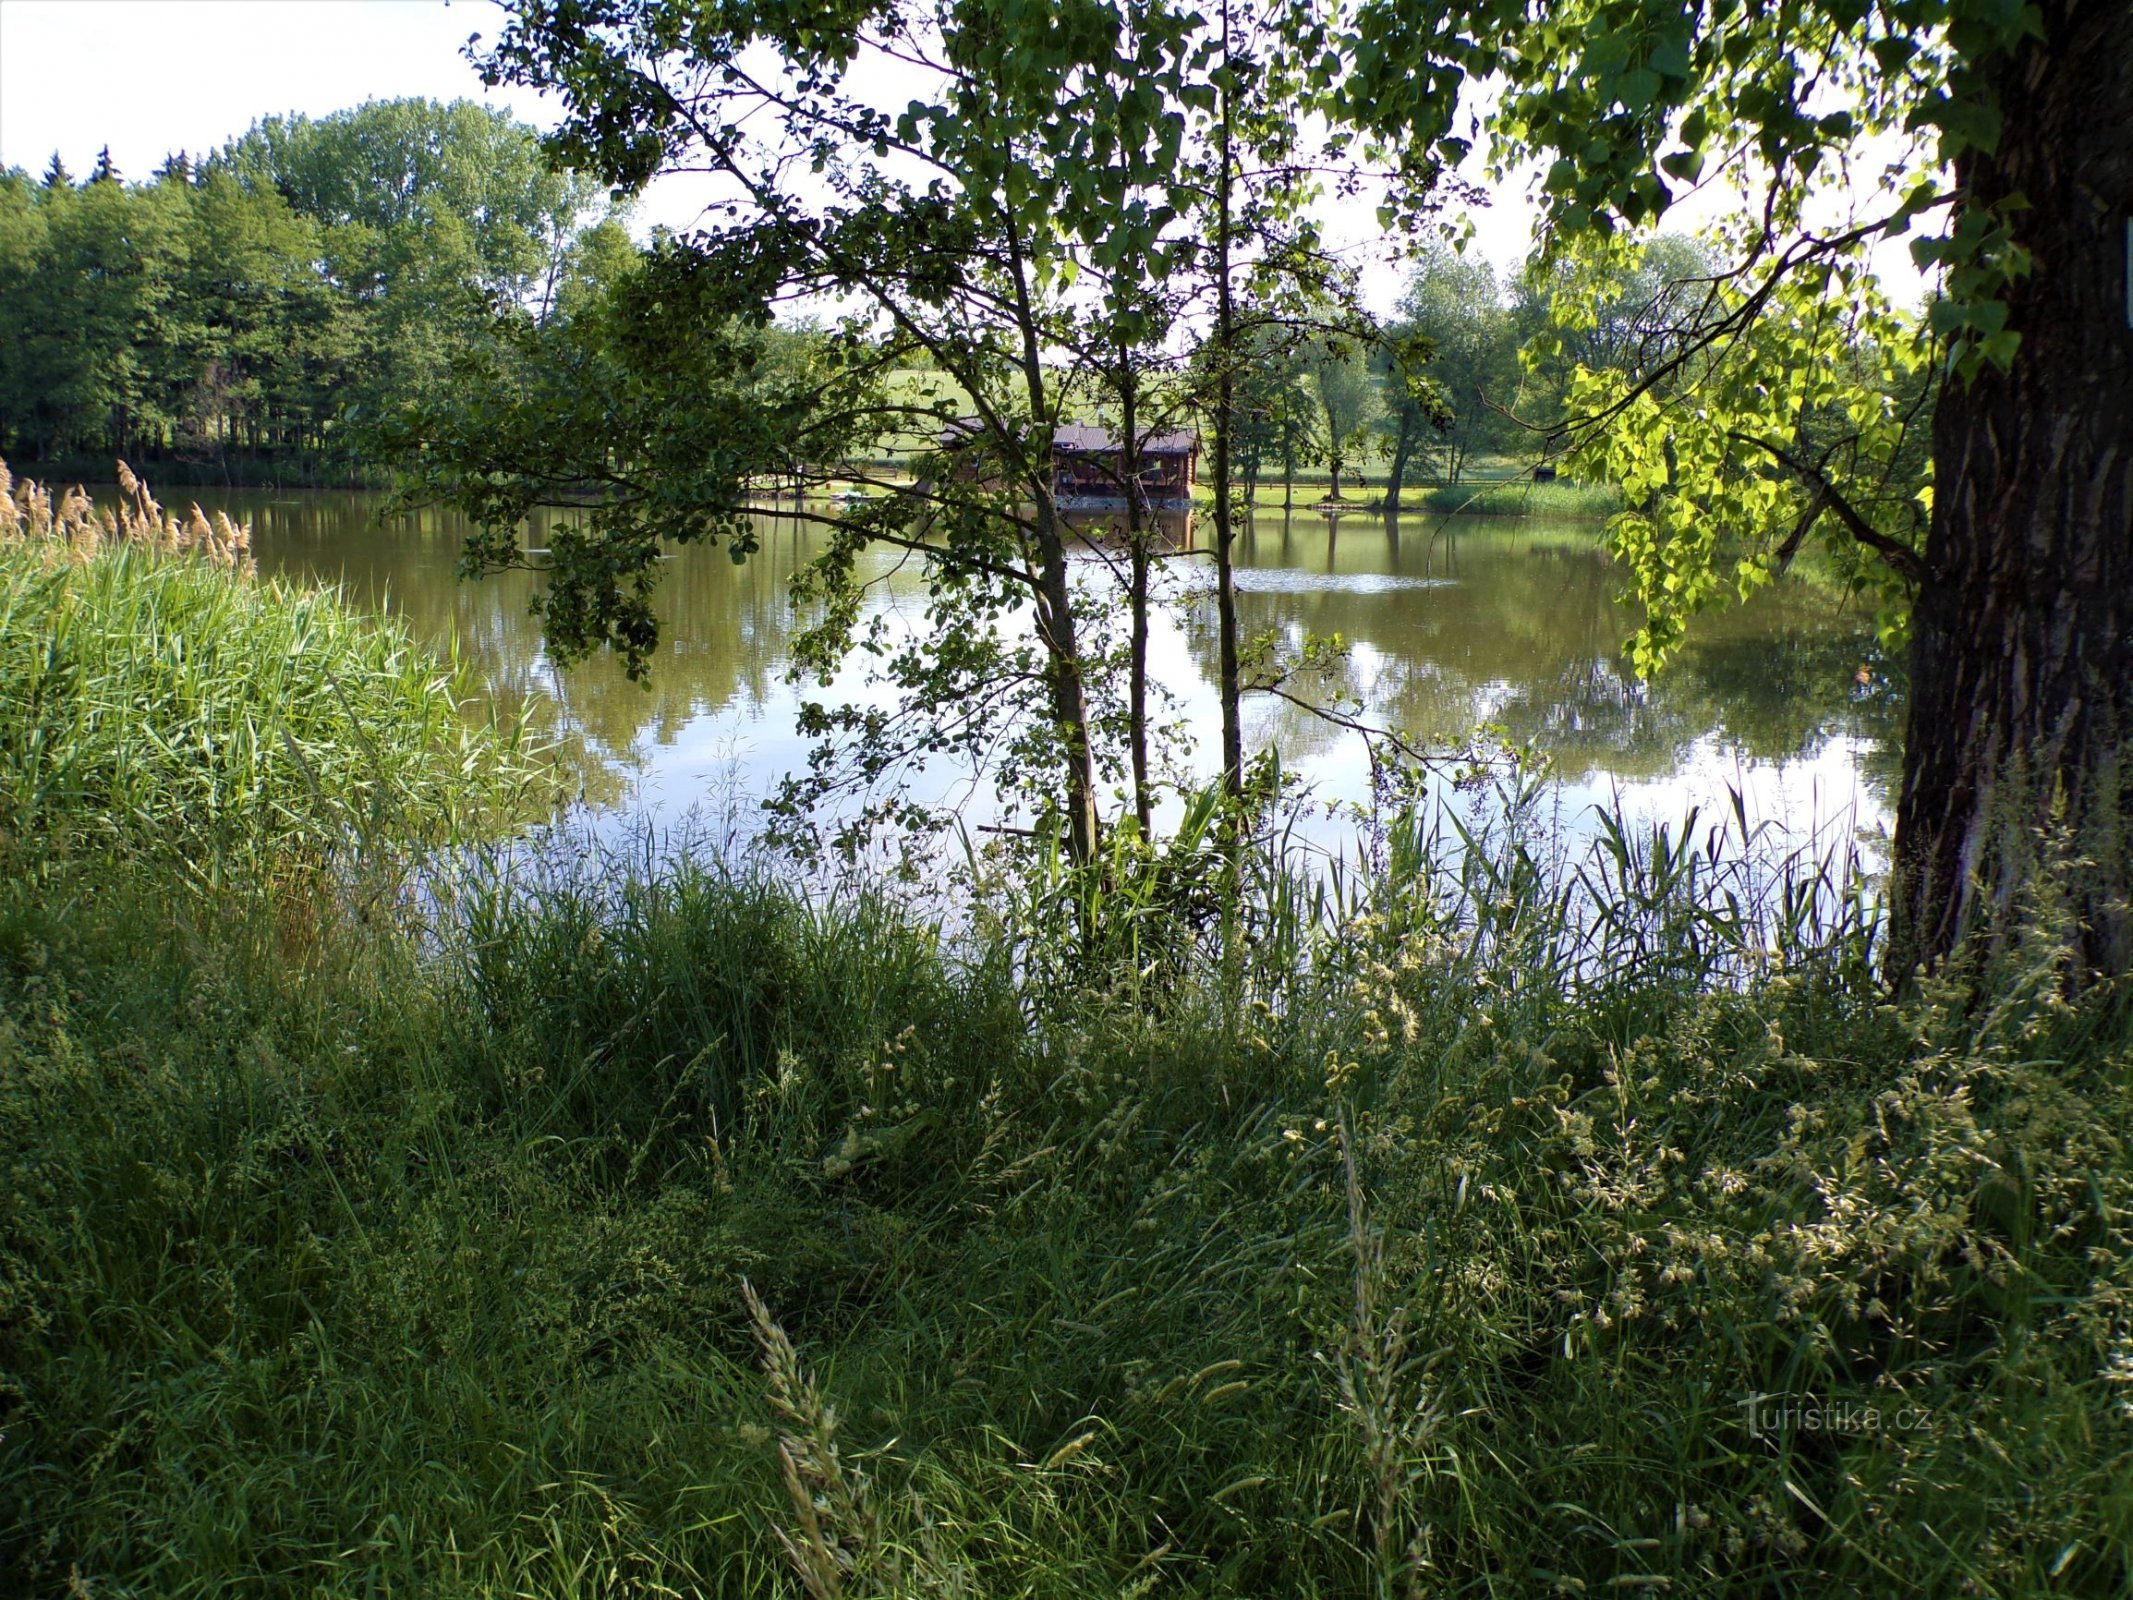 Pavlovský rybník (Jeníkovice, 15.6.2021/XNUMX/XNUMX)